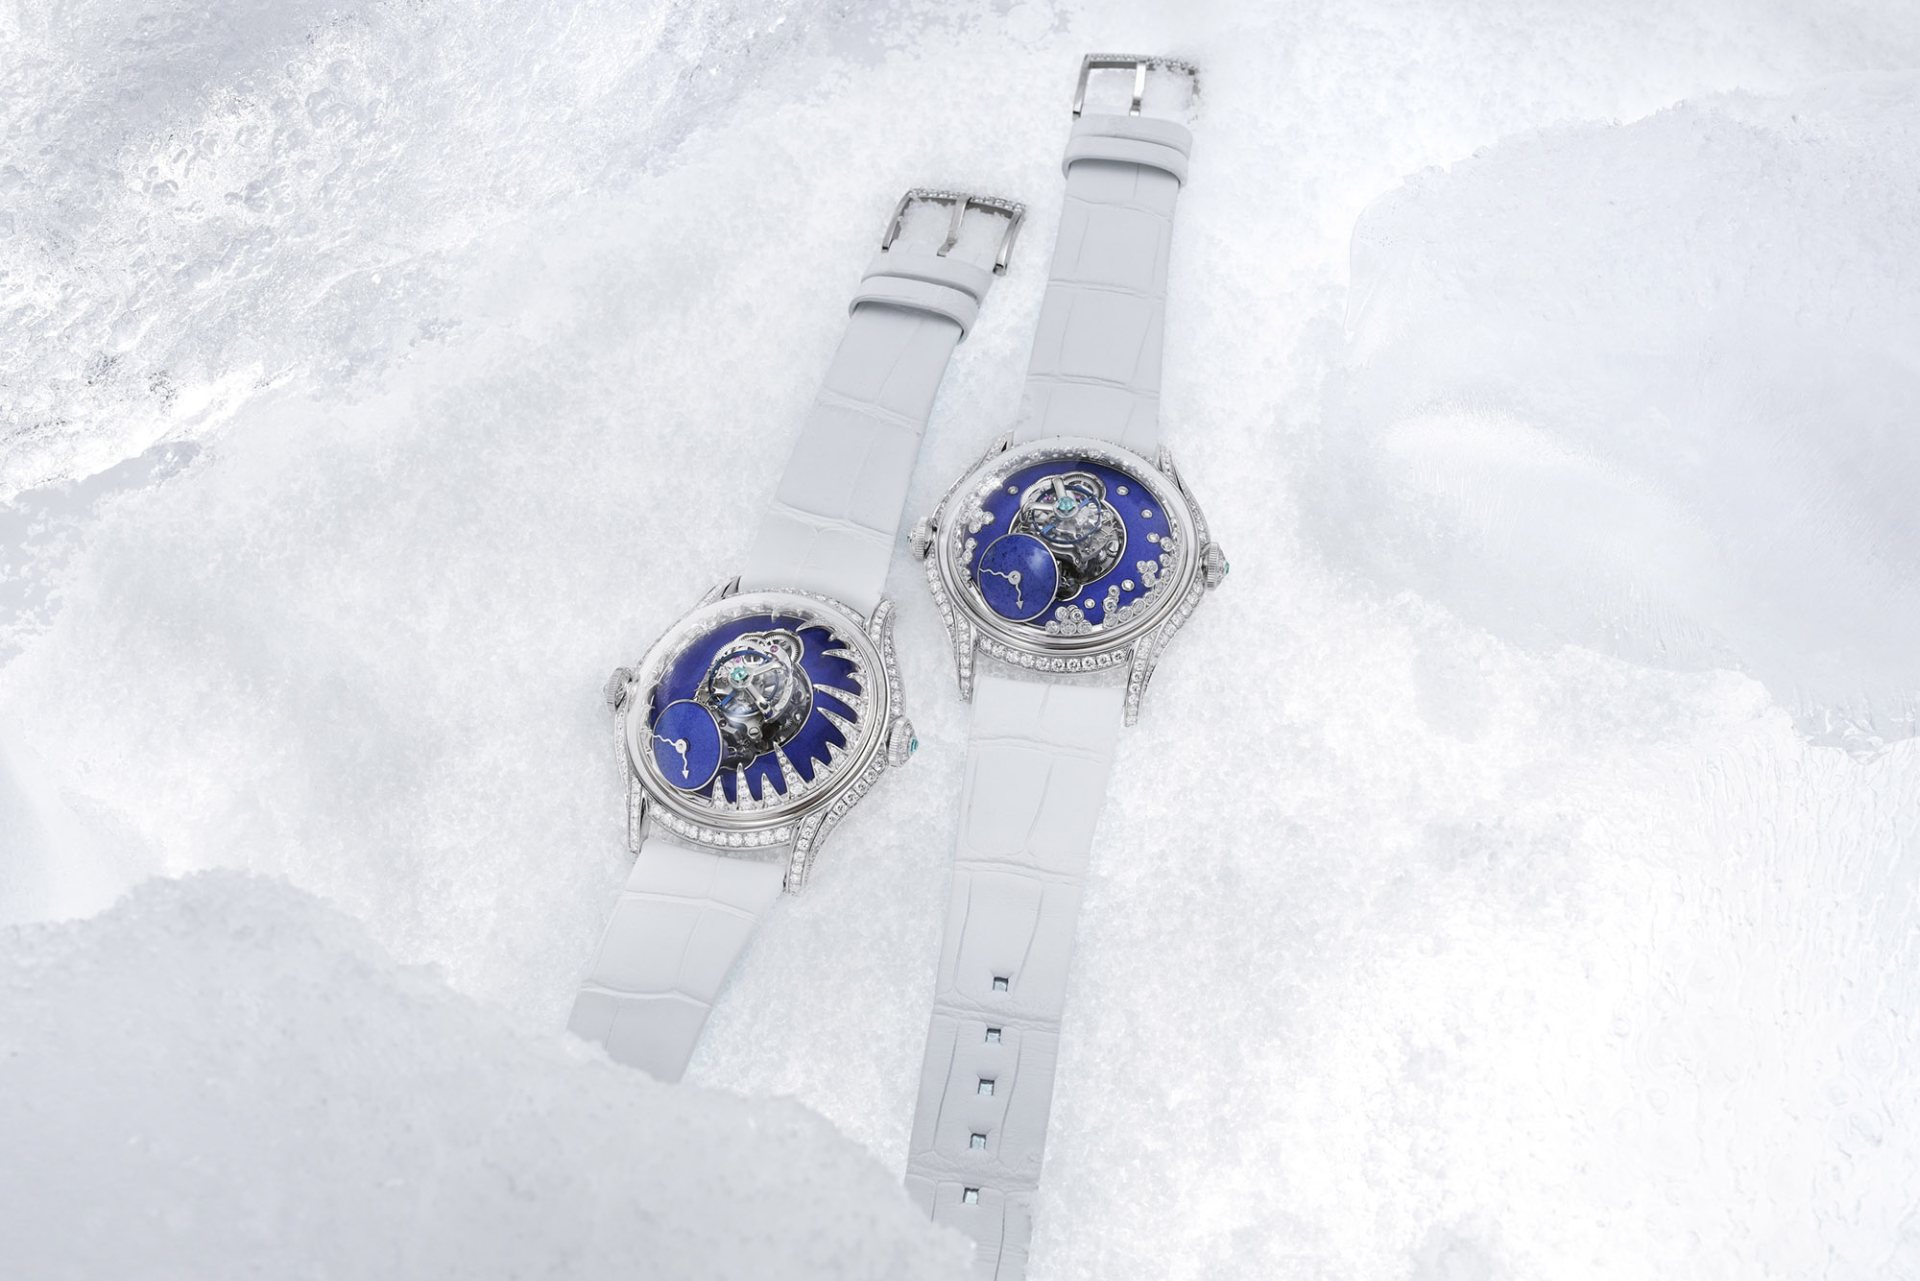 冰雪奇緣之MB&F Legacy Machine FlyingT ICE 冰晶和BLIZZARD暴雪限量版腕錶